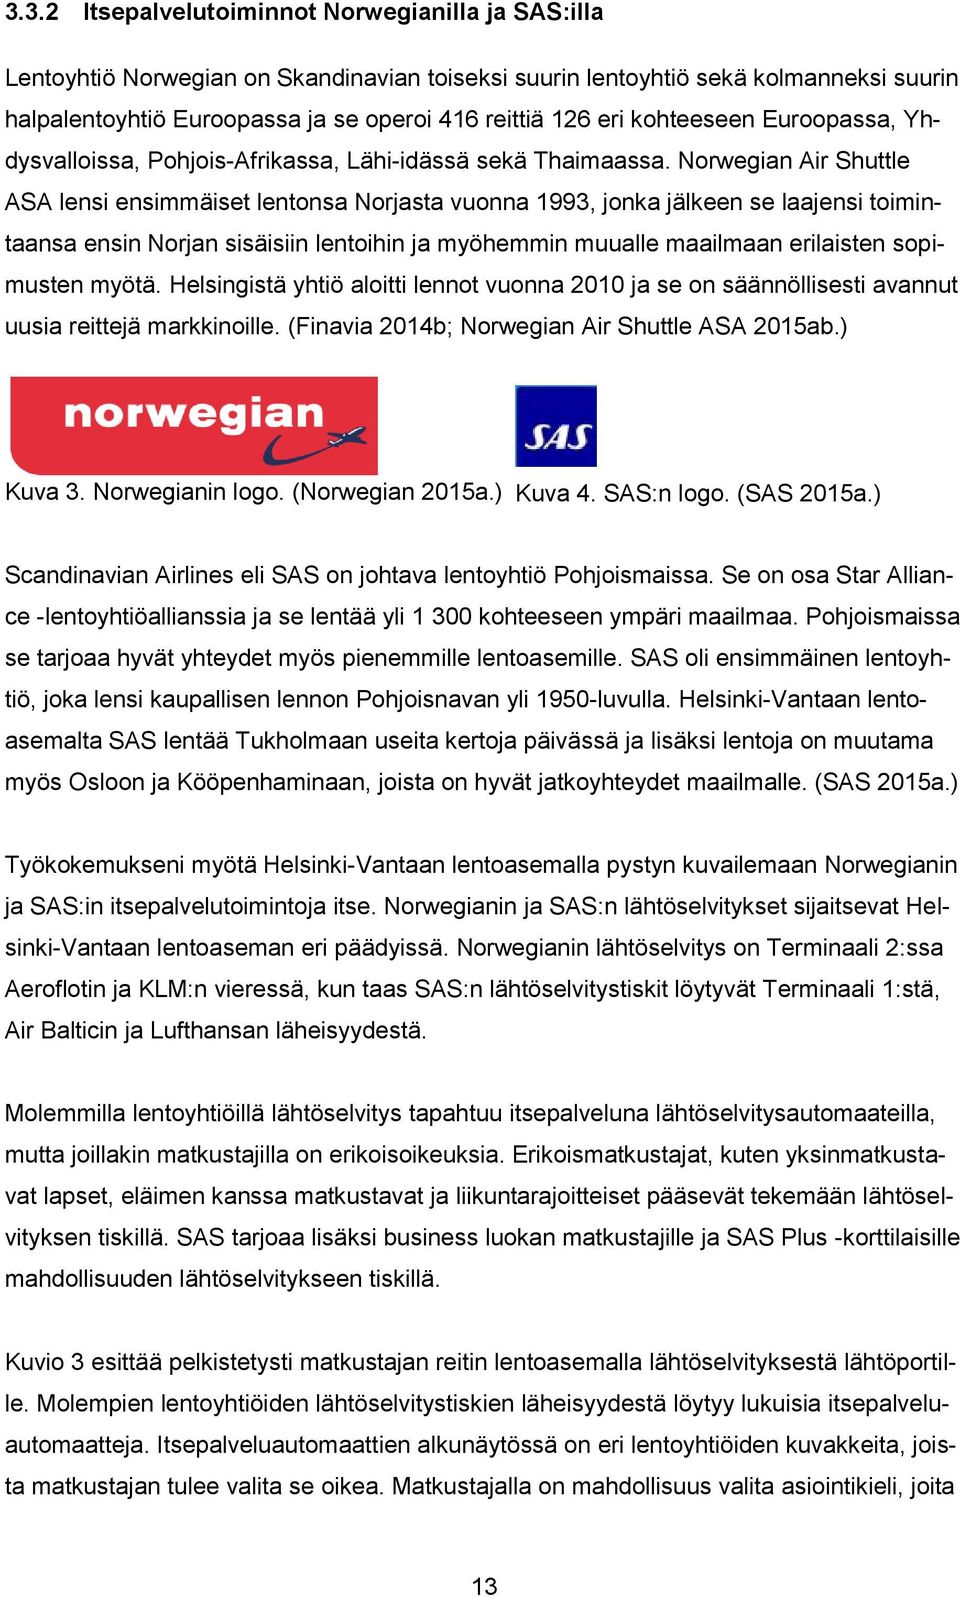 Norwegian Air Shuttle ASA lensi ensimmäiset lentonsa Norjasta vuonna 1993, jonka jälkeen se laajensi toimintaansa ensin Norjan sisäisiin lentoihin ja myöhemmin muualle maailmaan erilaisten sopimusten